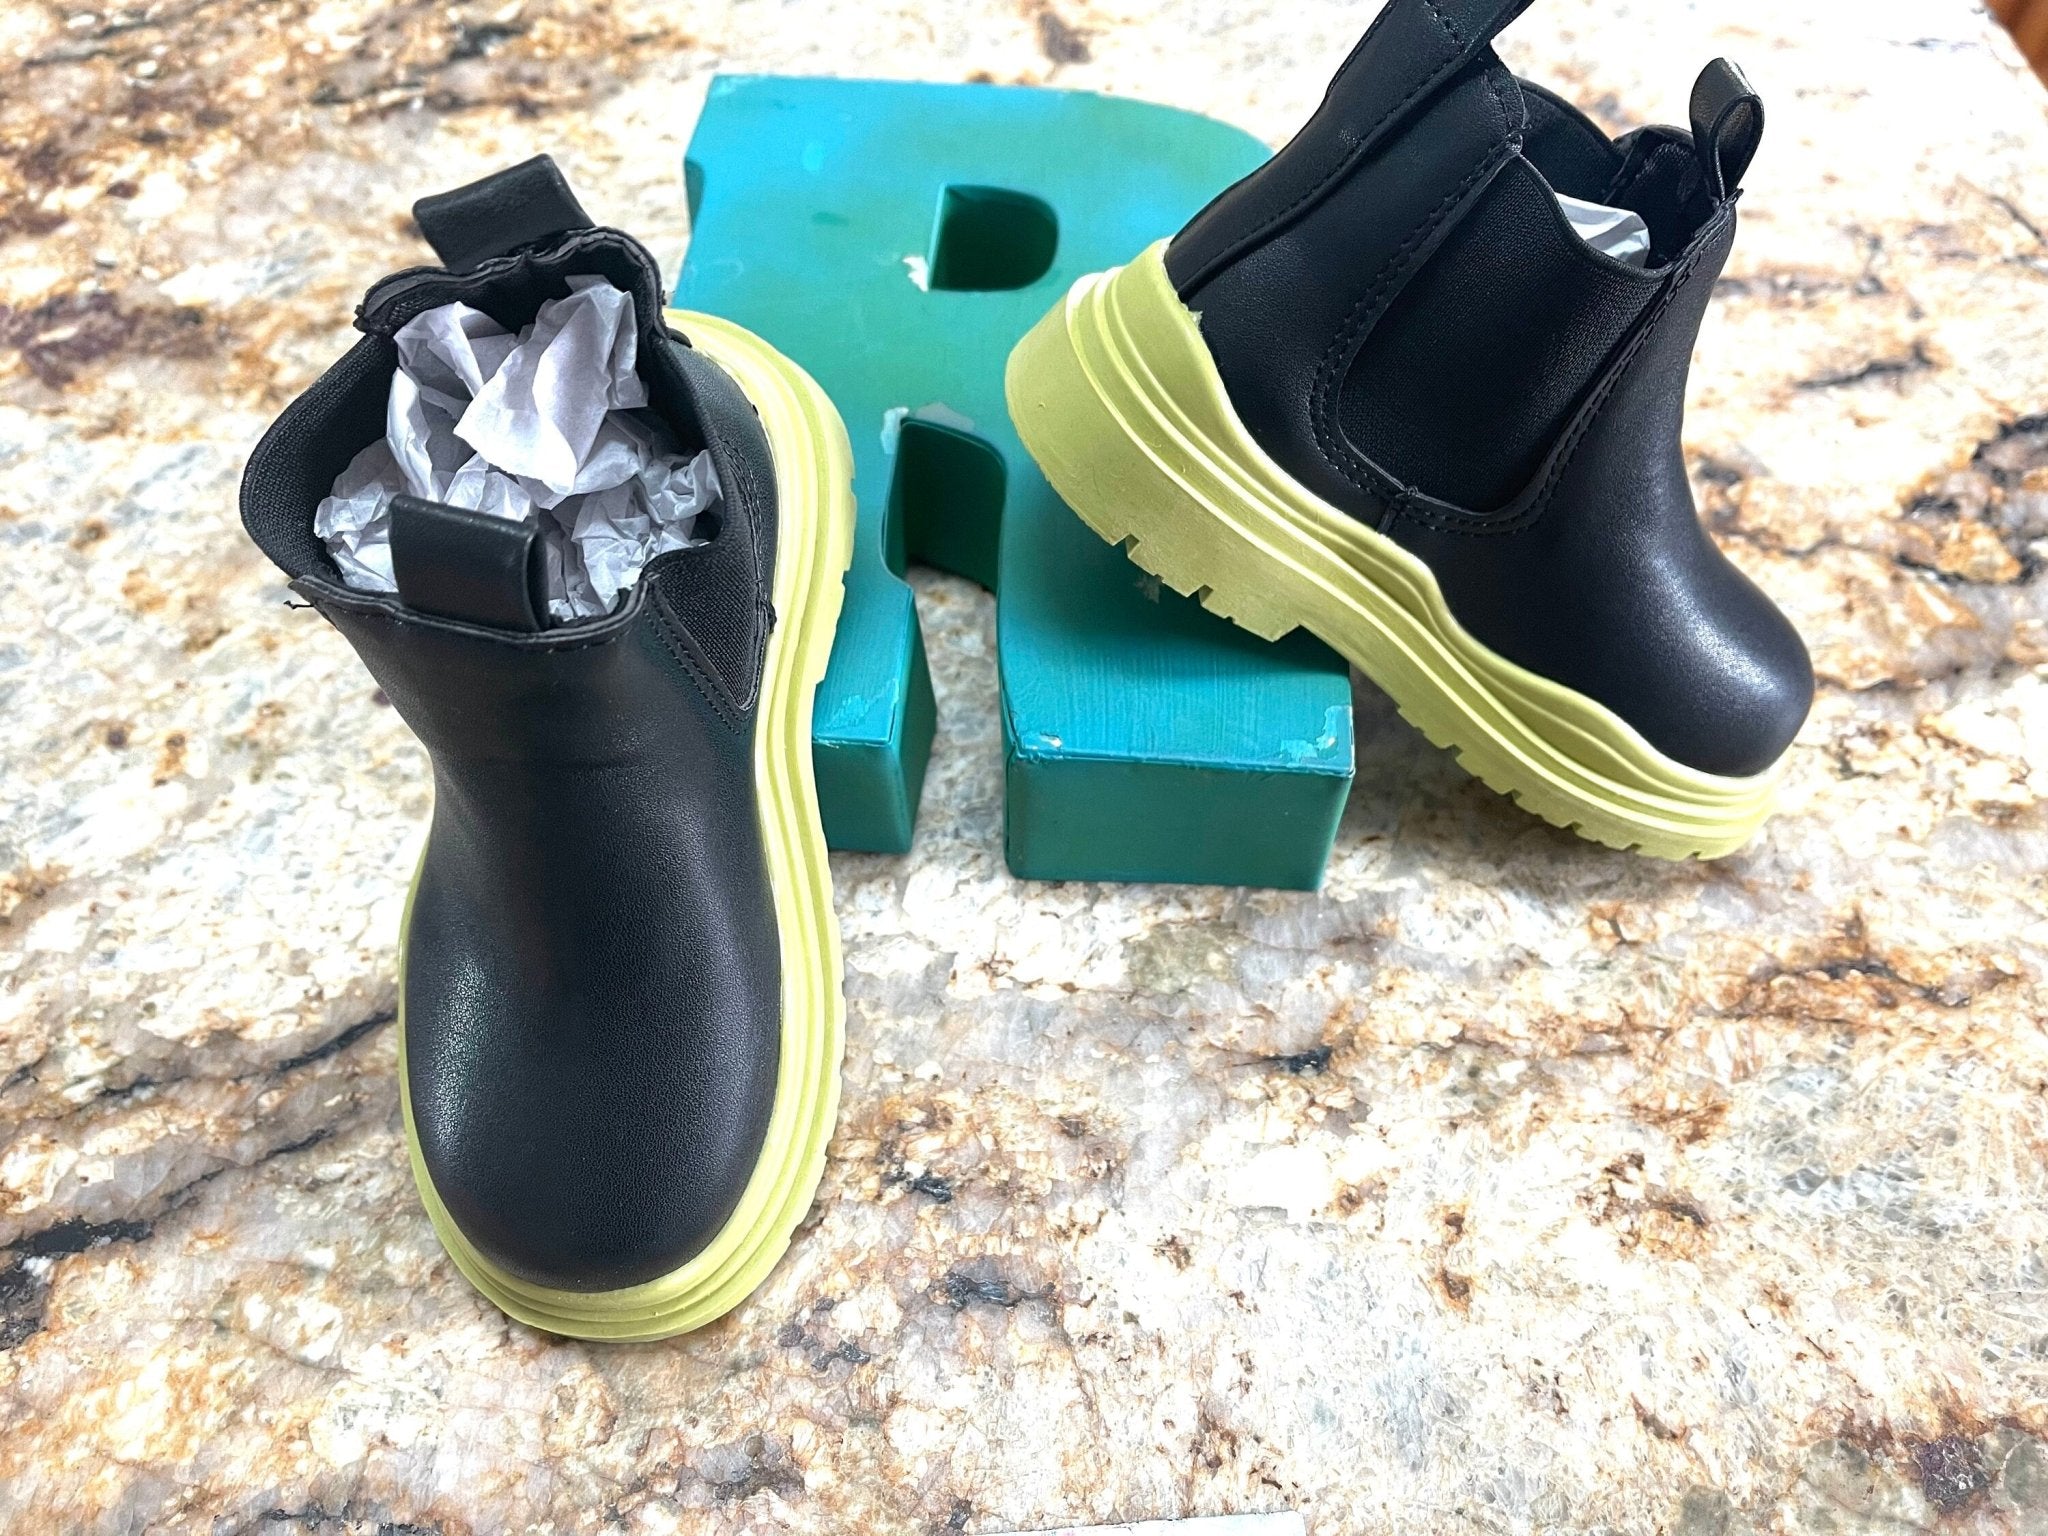 Kids Boots, Waterproof Leather Boots - Razels